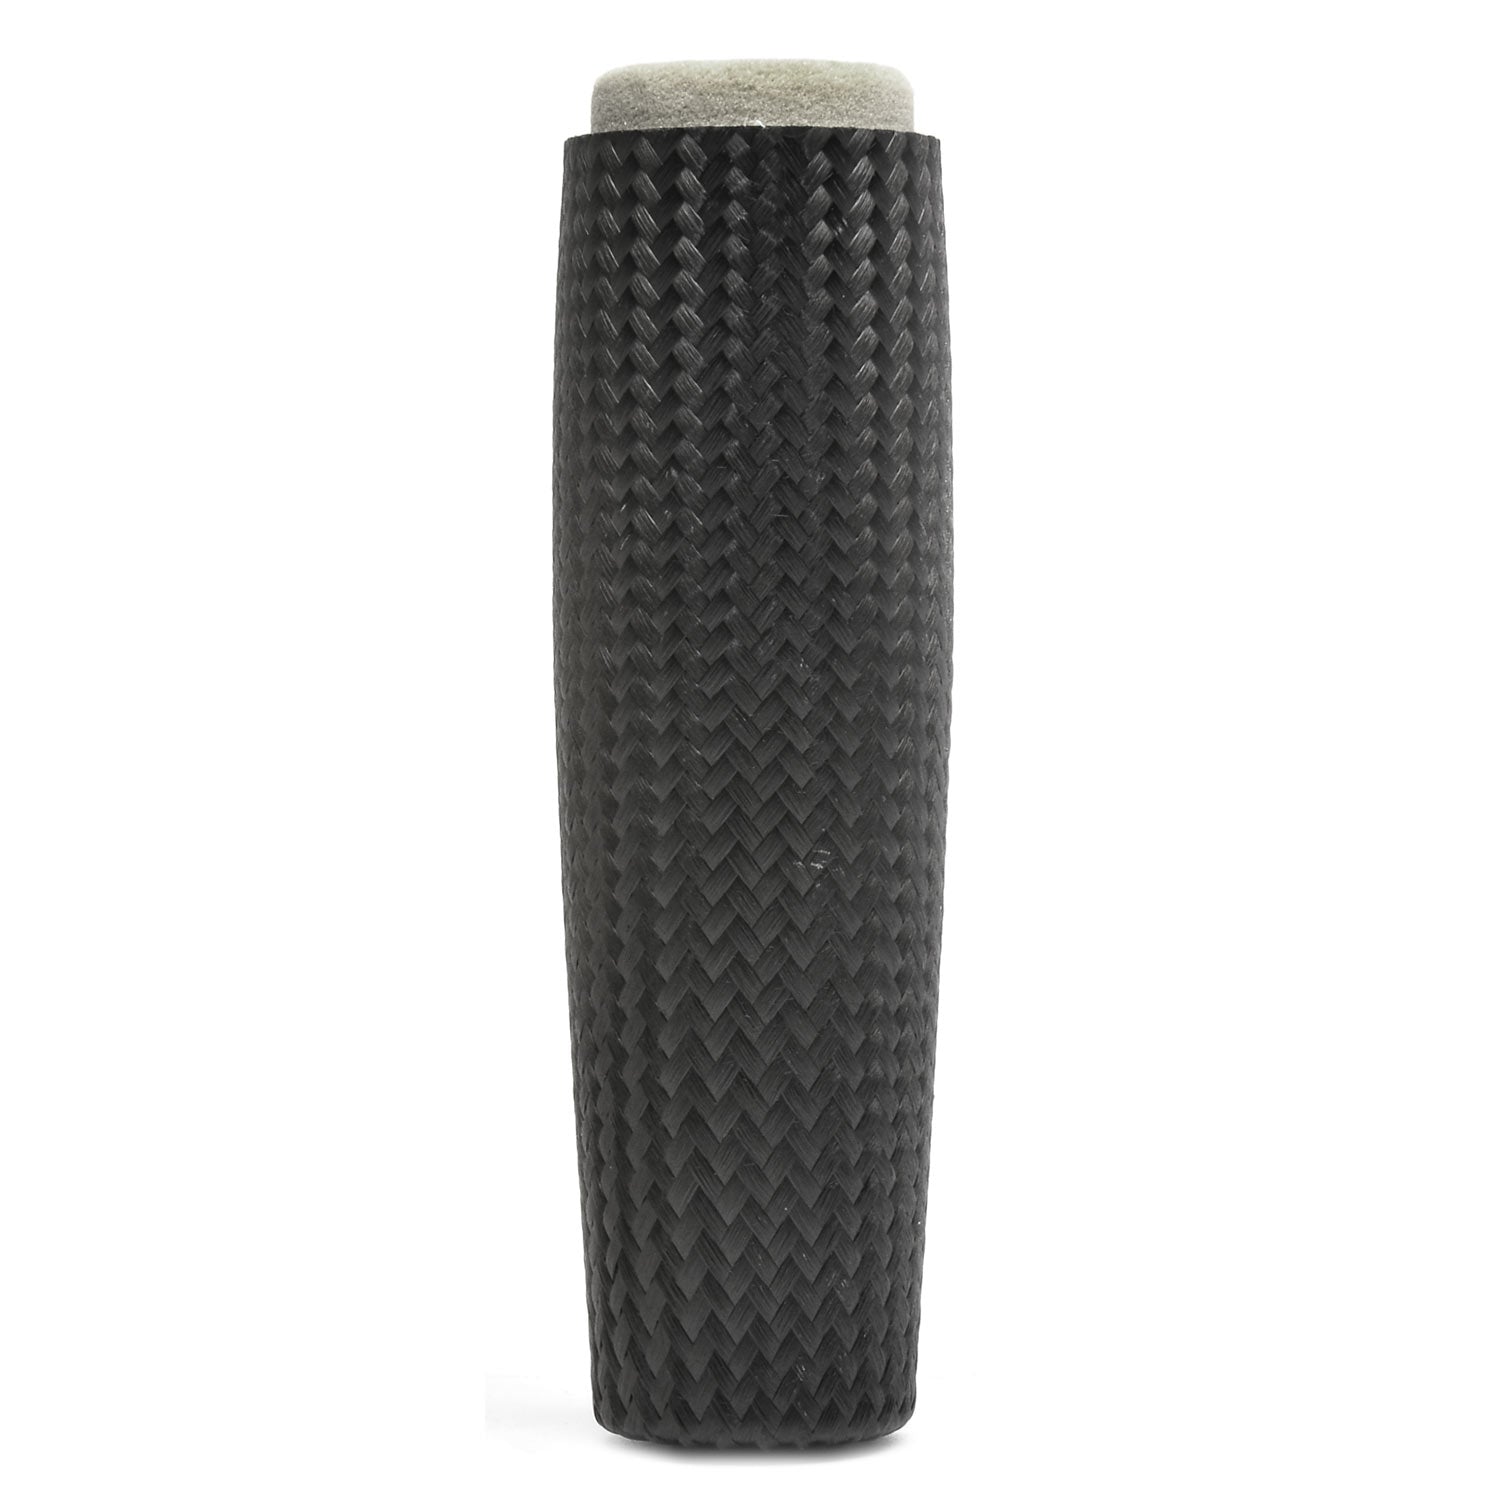 CFX Composite Carbon Fiber Grips - Casting Split Grip